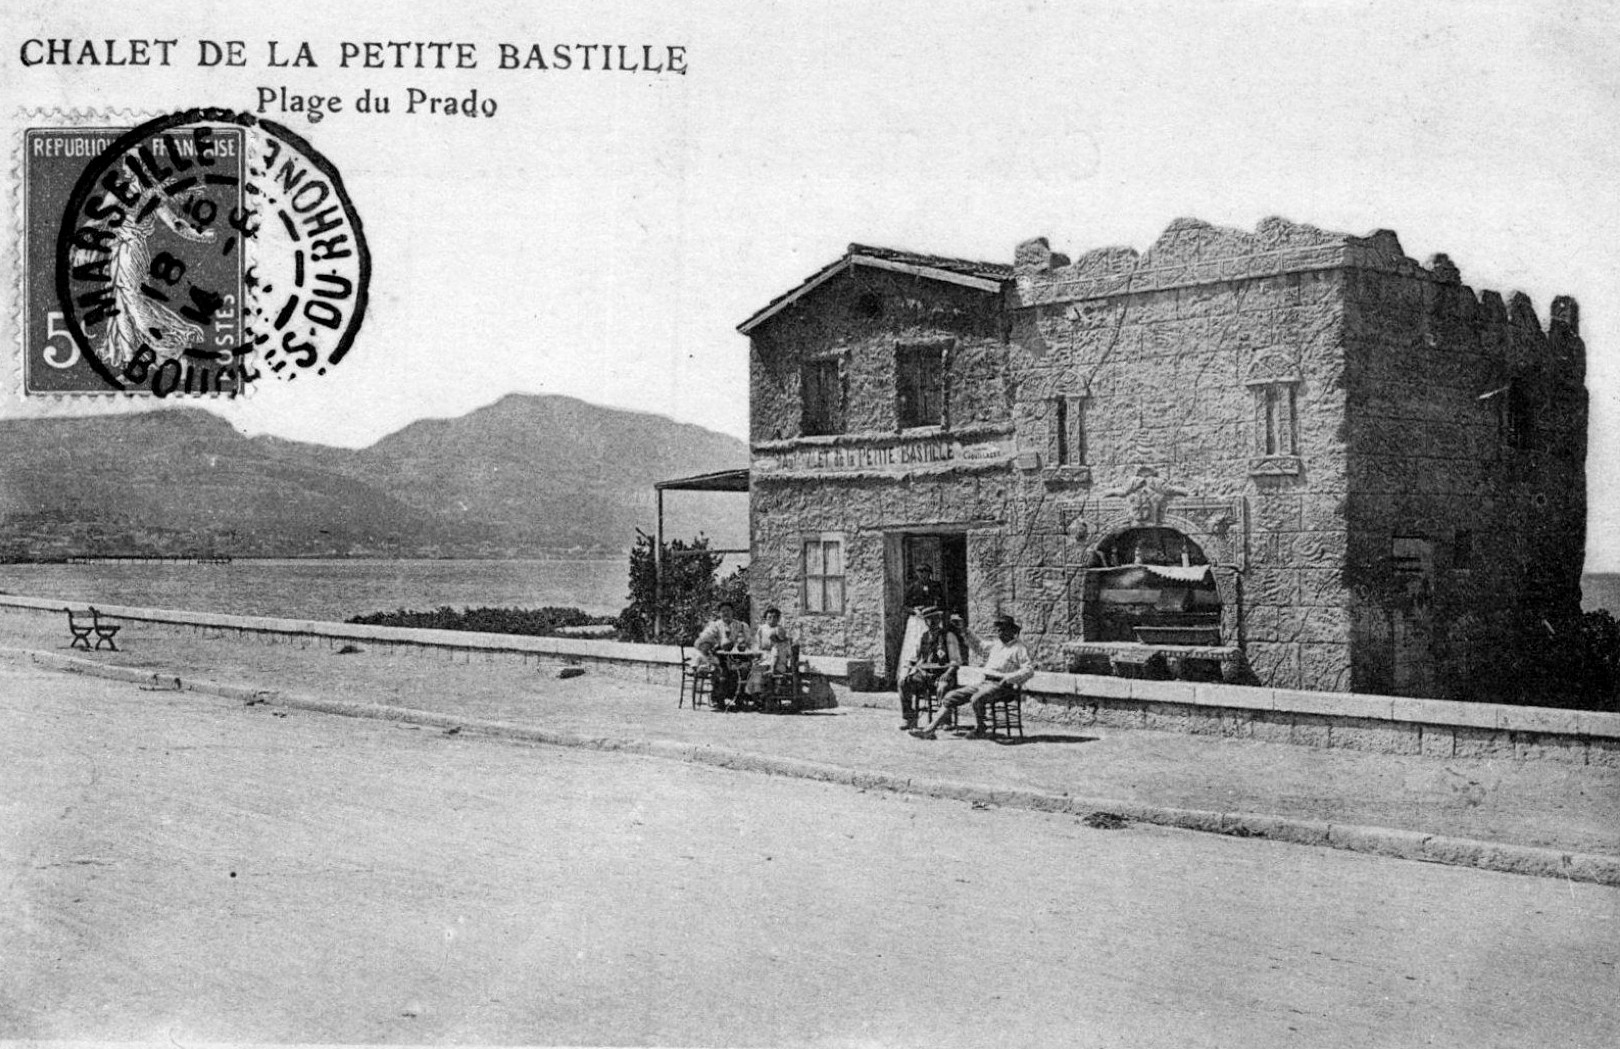 Restaurant Redonnet & le Chalet de la Petite Bastille